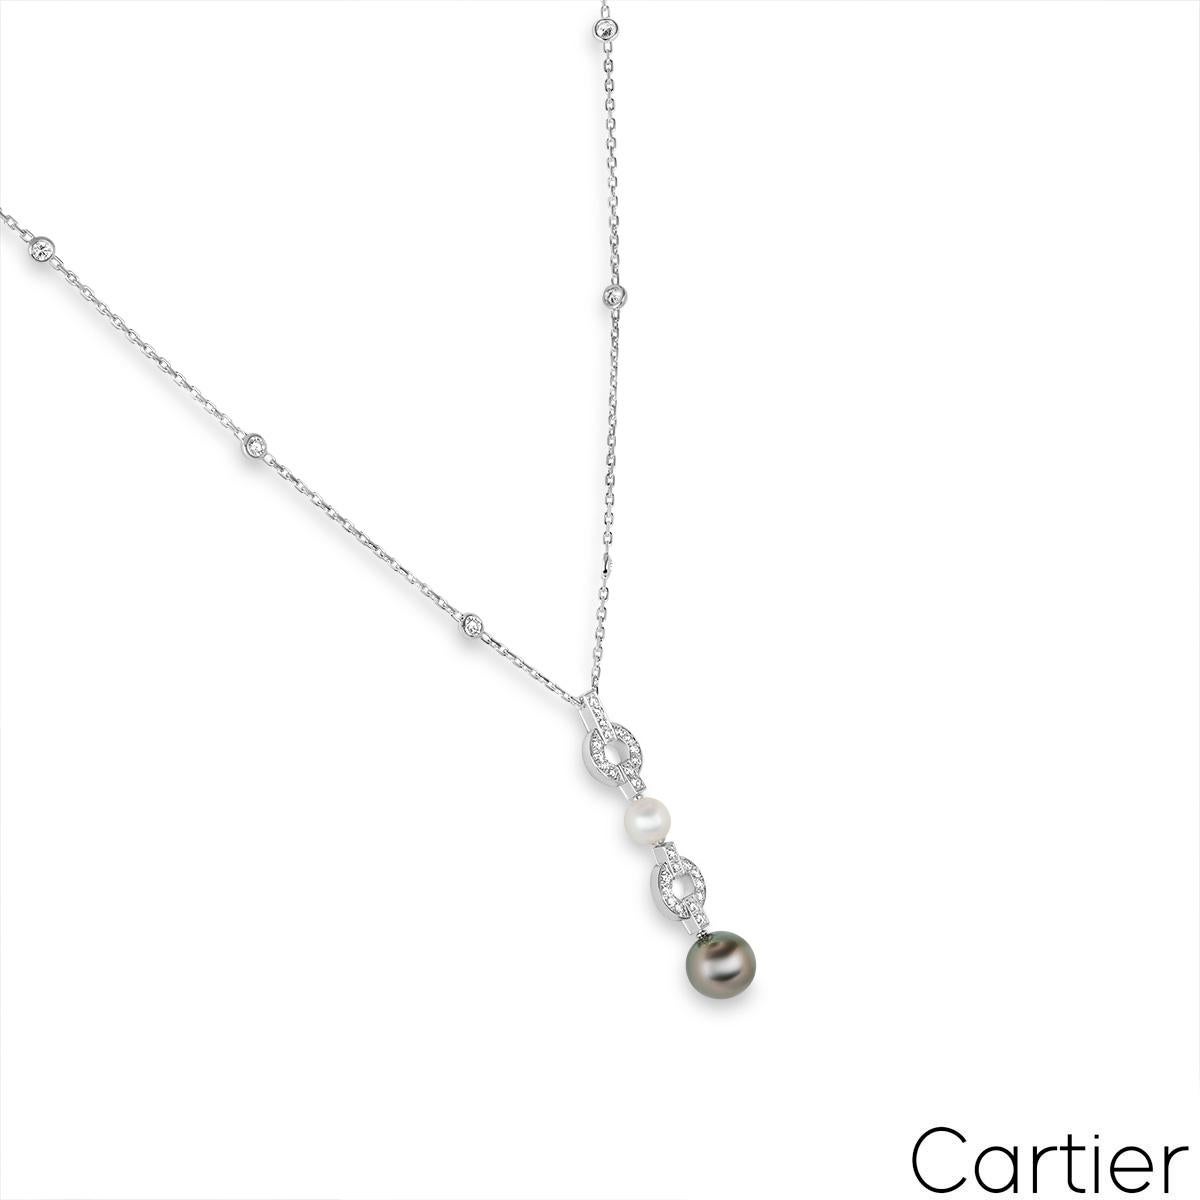 Magnifique collier en or blanc 18 carats, perles et diamants, de Cartier, de la collection Himalia. Le pendentif alterne un motif circulaire serti de diamants et une perle. La première perle mesure 7 mm de large et présente une teinte blanche avec